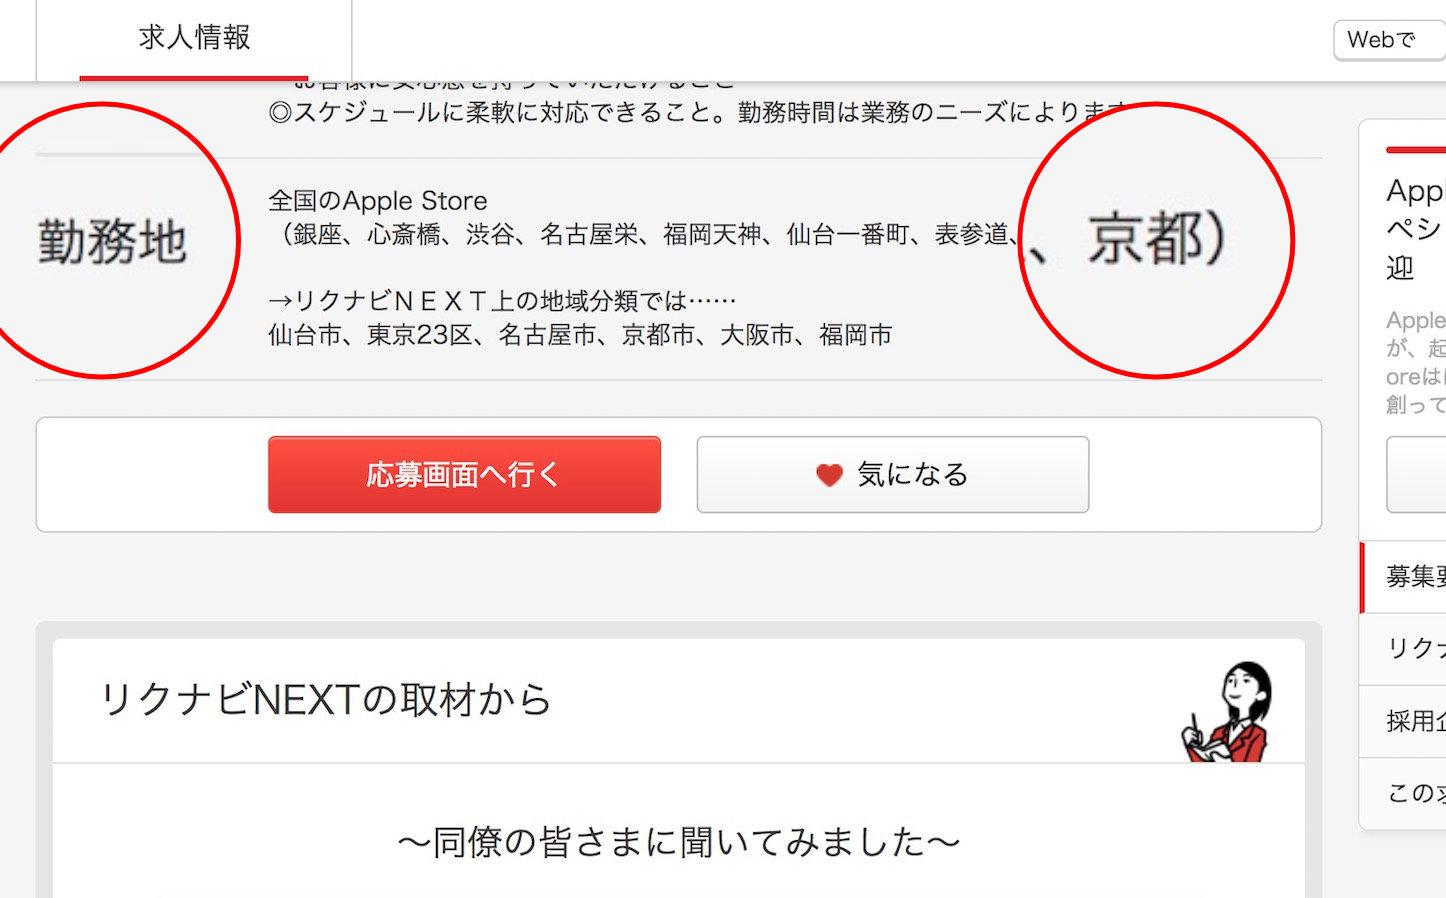 Kyoto-Apple-Store-Coming-Soon.jpg